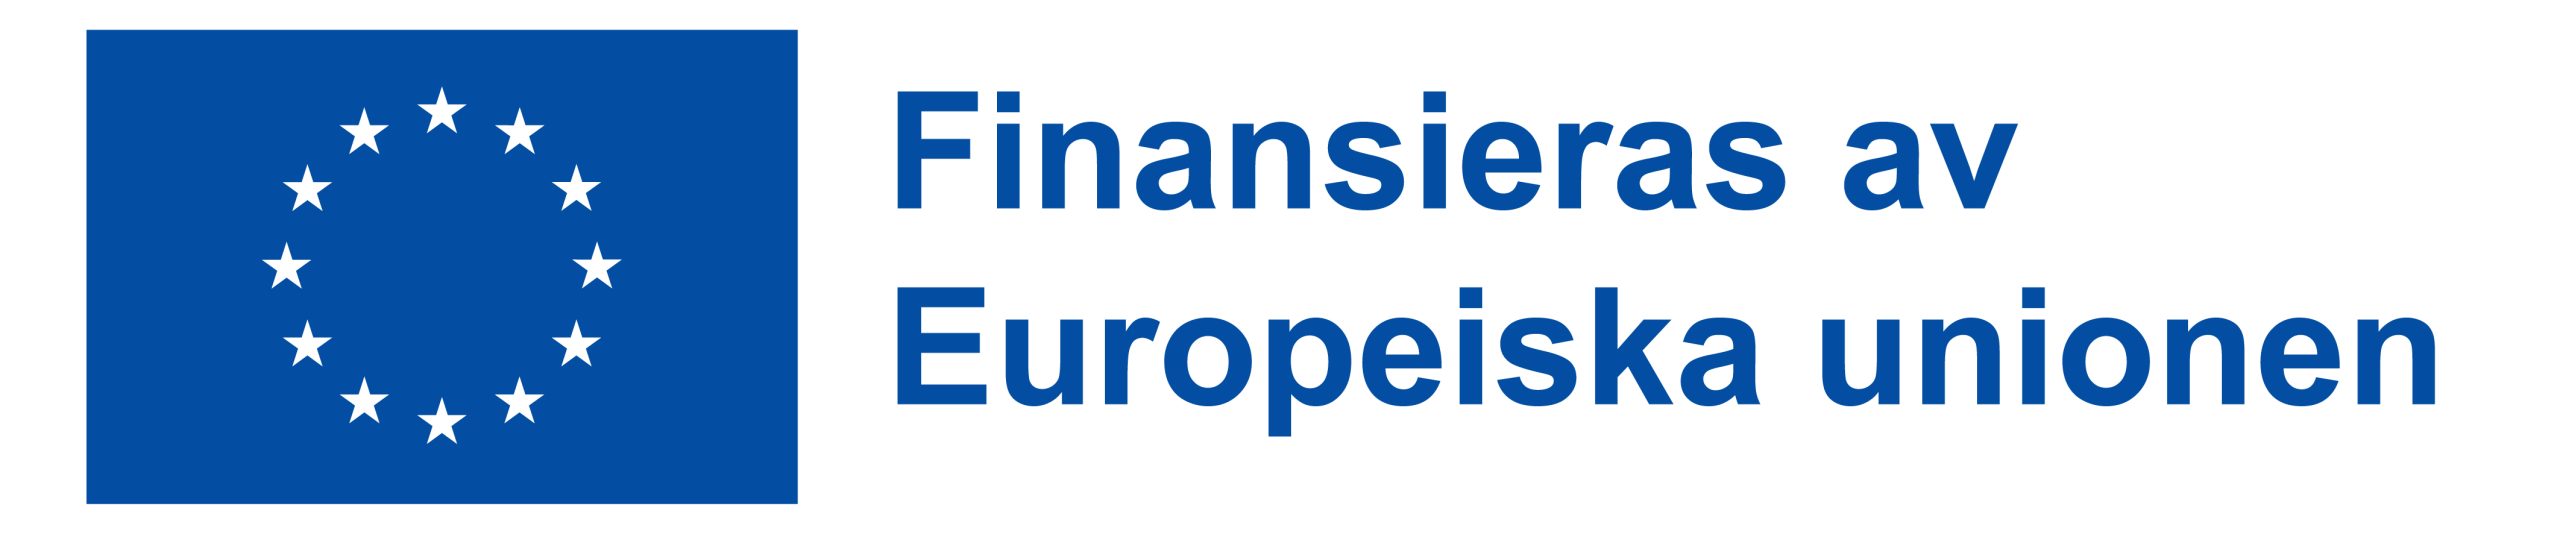 Finansieras av Europeiska unionen logo